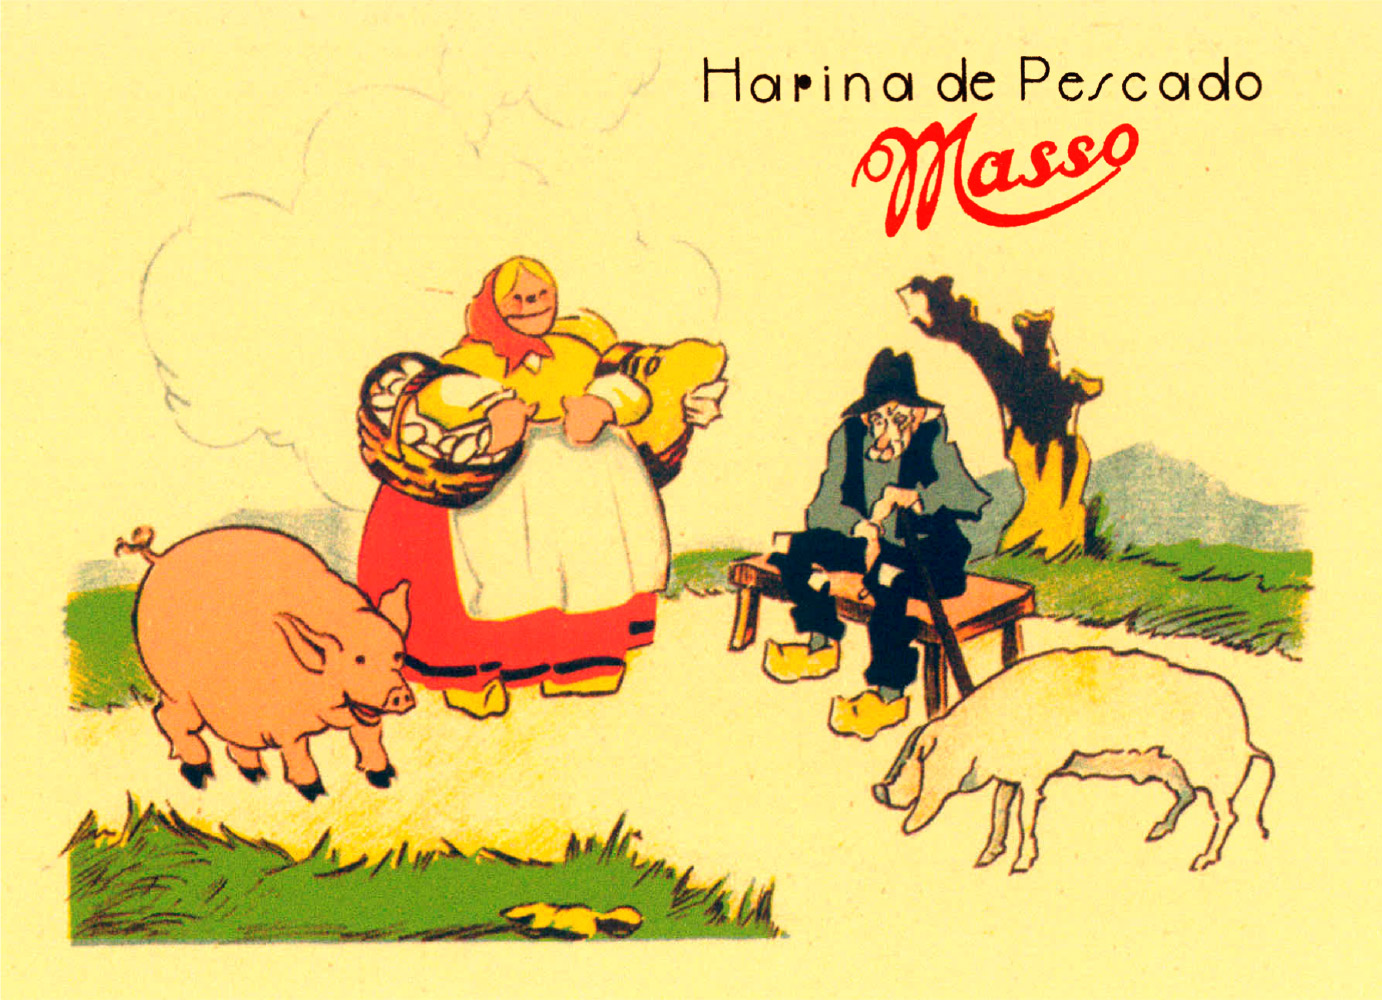 Catálogo de fariñas de peixe Massó. Debuxo de Vicente M. Feducci e Salvador Massó. Vigo. 1938